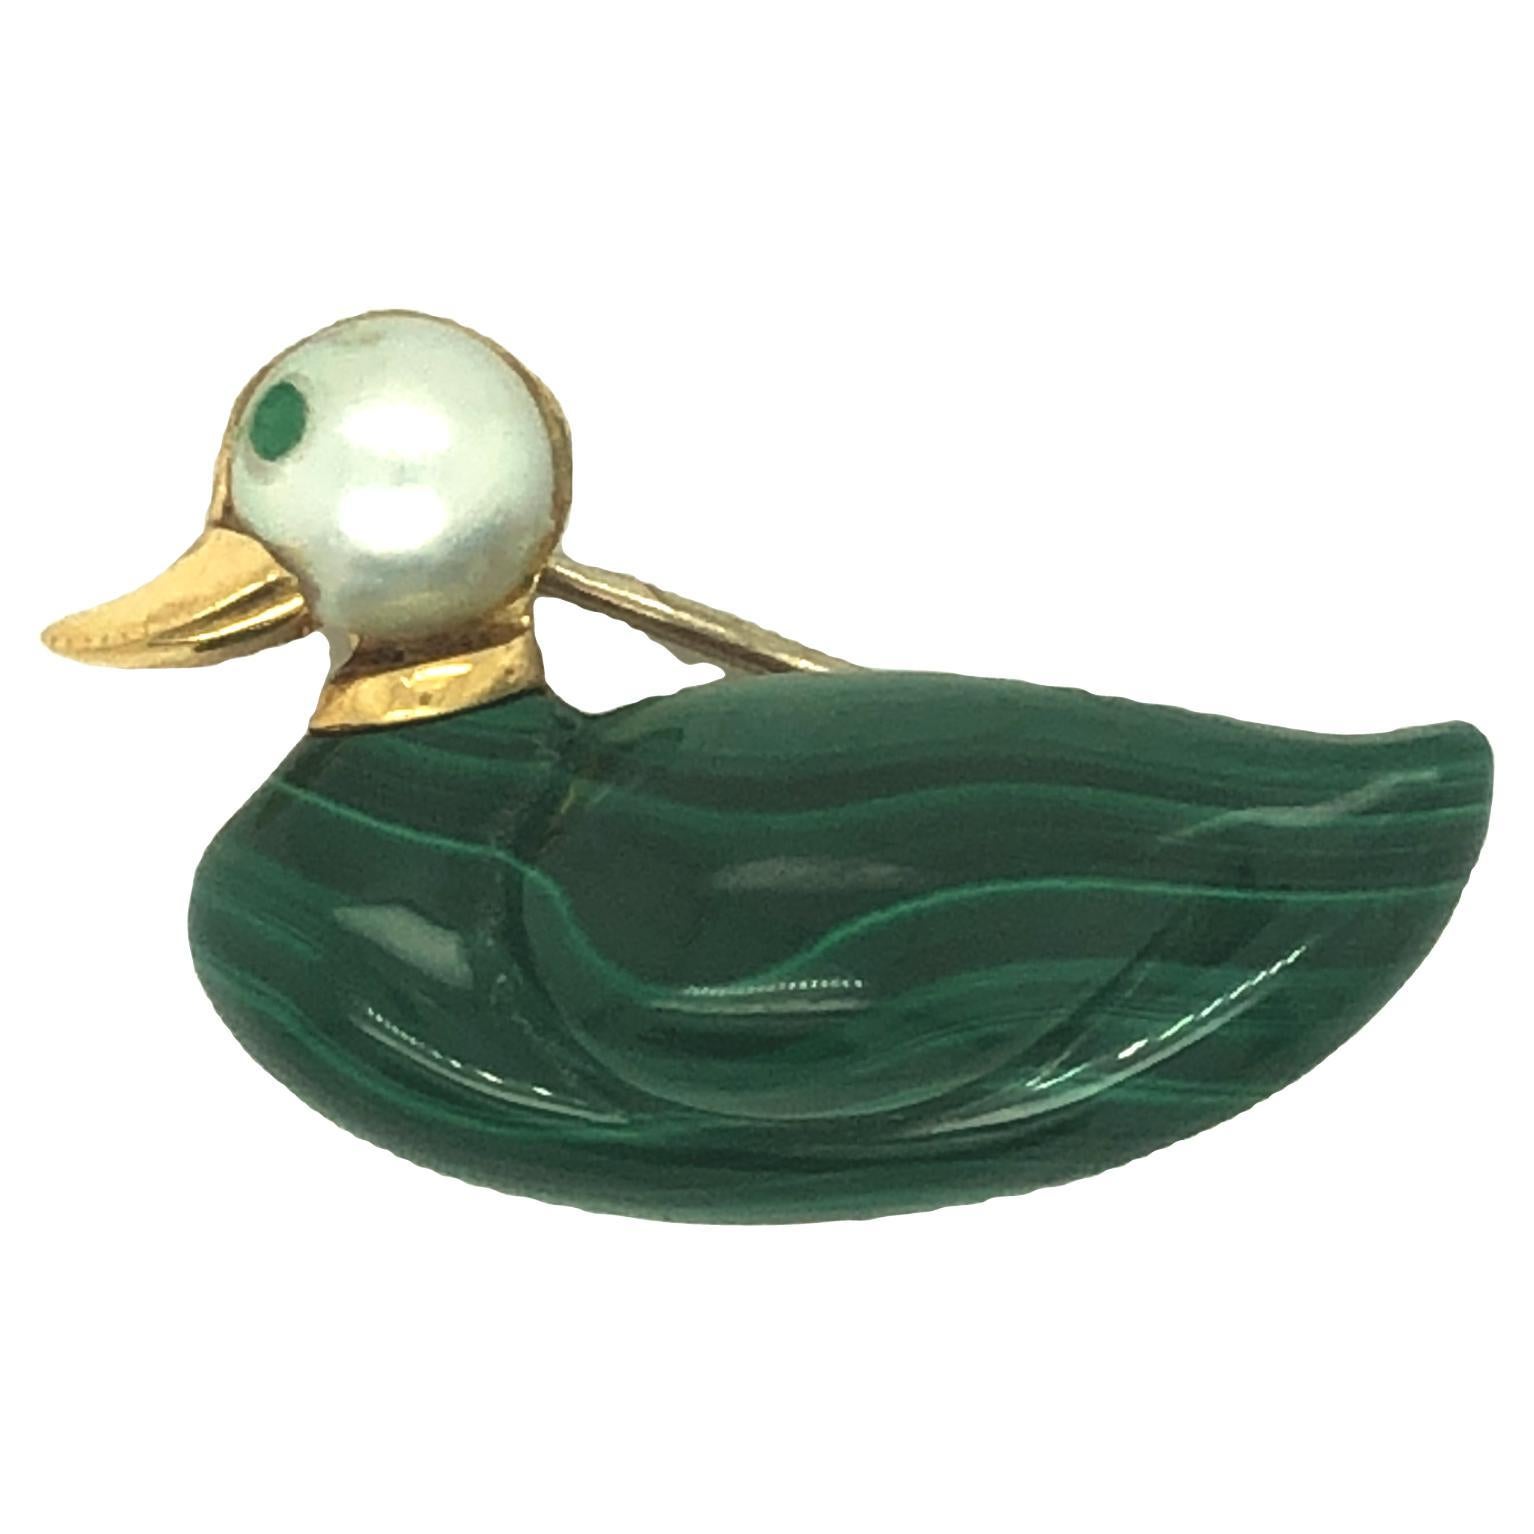 Little Black Duck brooch /pendant